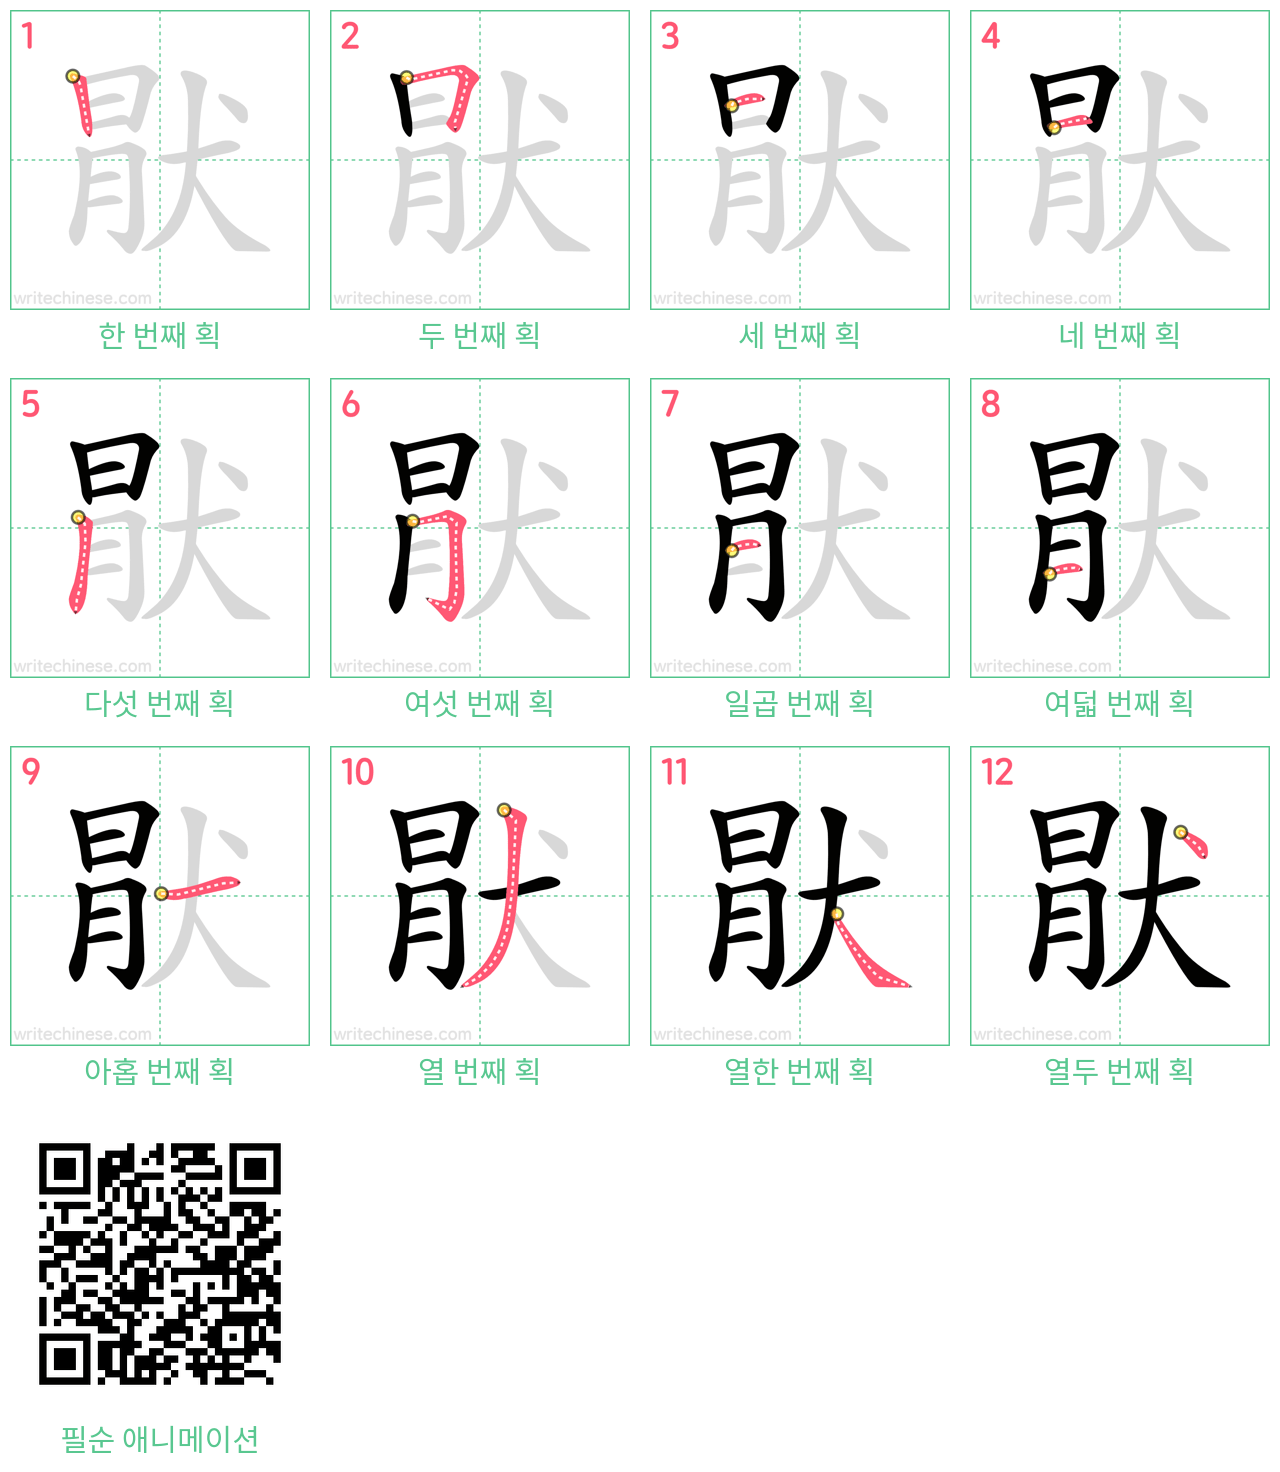 猒 step-by-step stroke order diagrams